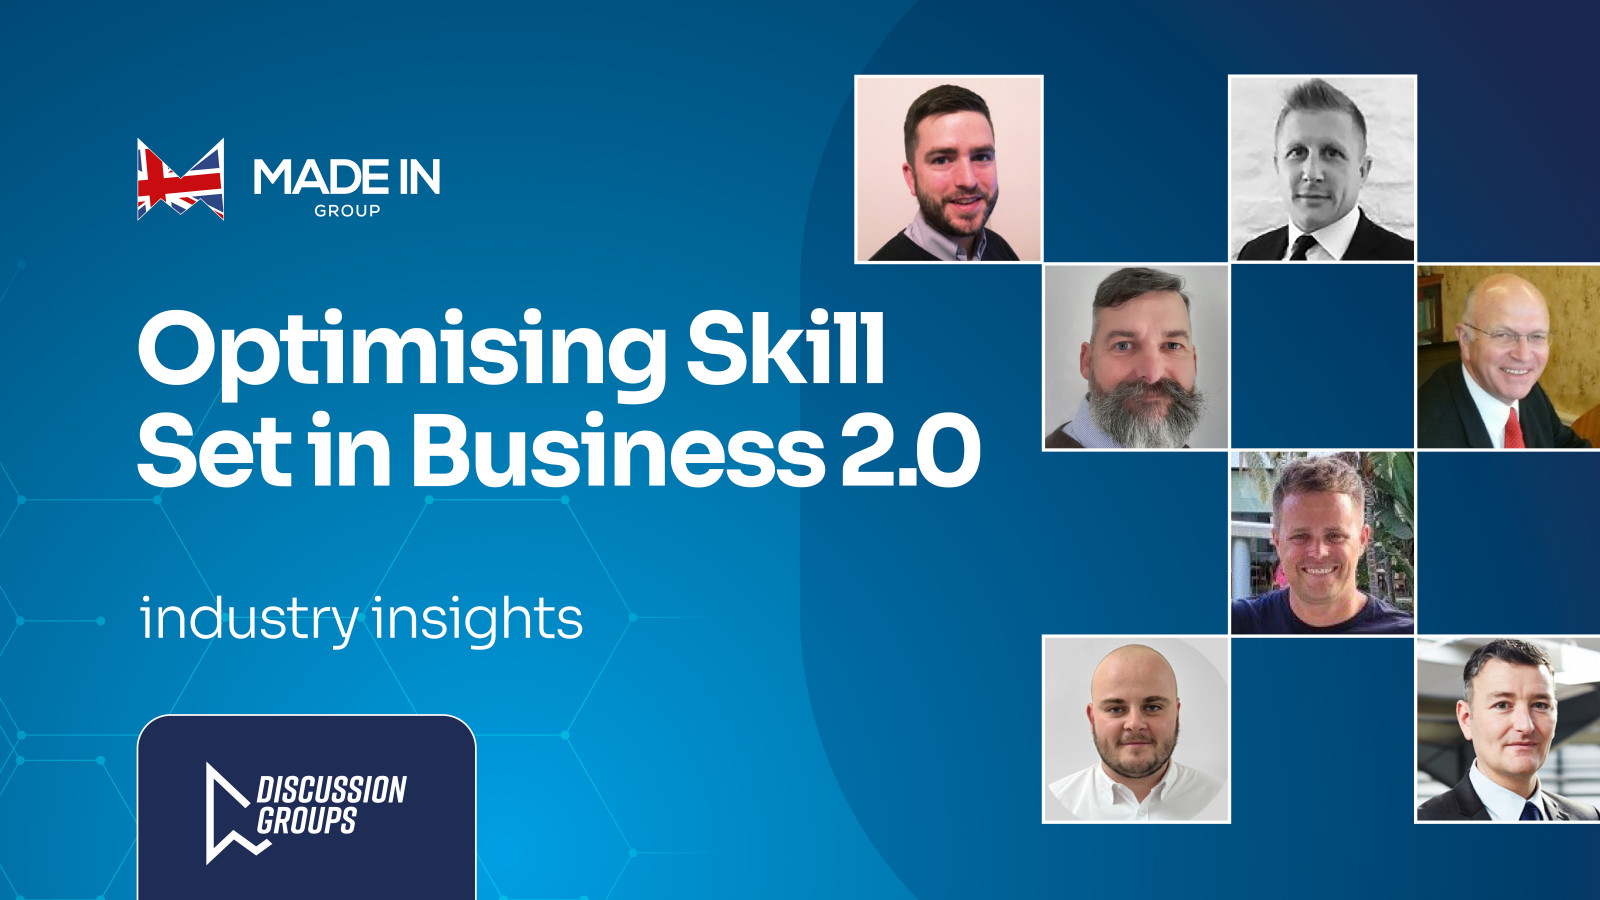 Optimising Skill Set in Business 2.0 - What Did Members say?